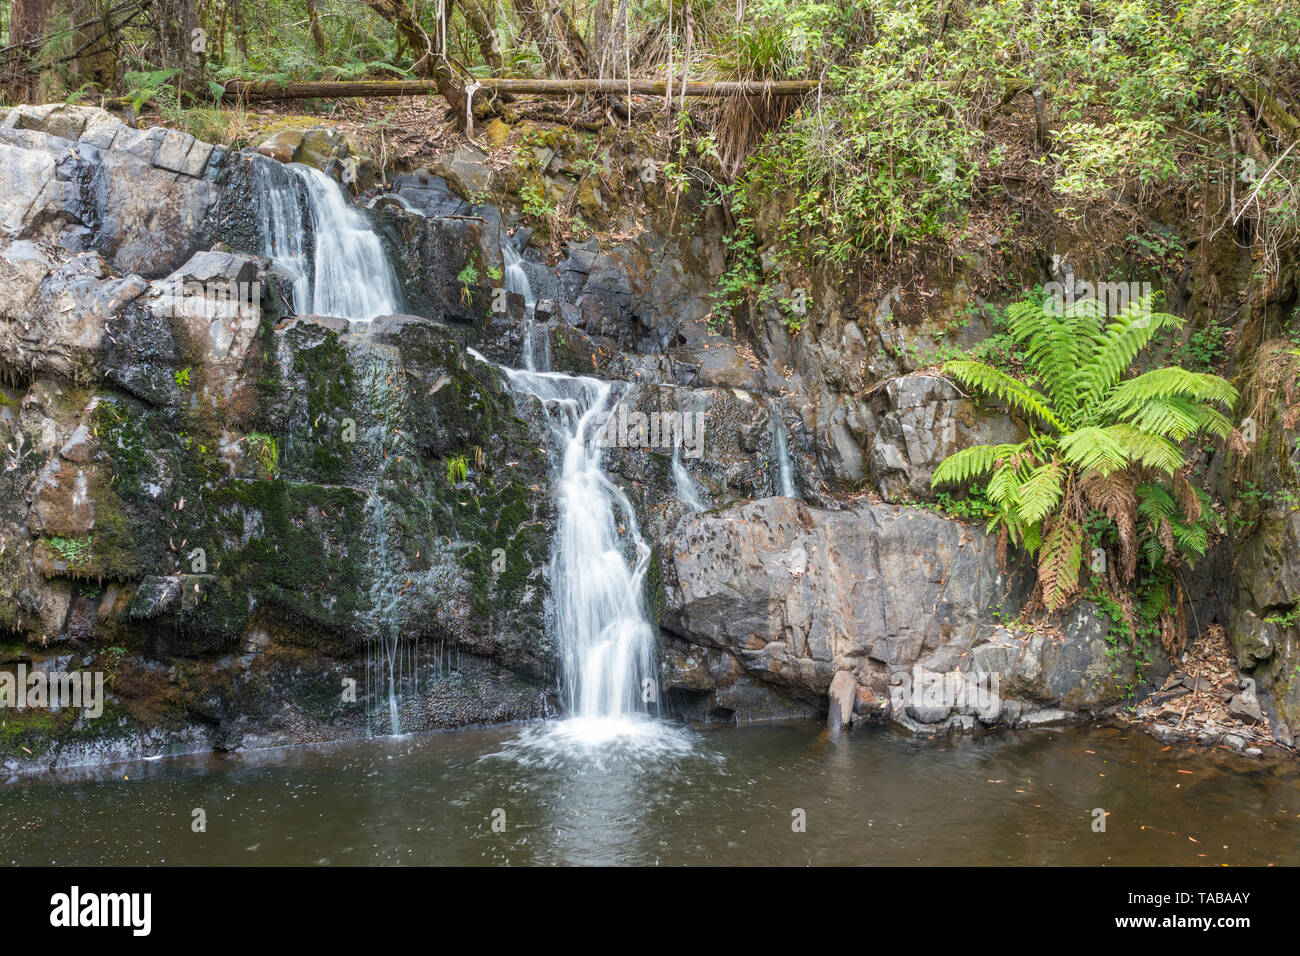 Lilydale Falls se compose de deux chutes d'eau près de l'autre, dans la réserve, à proximité de la tombe de Lilydale canton de Lilydale en Tasmanie, Australie. Banque D'Images